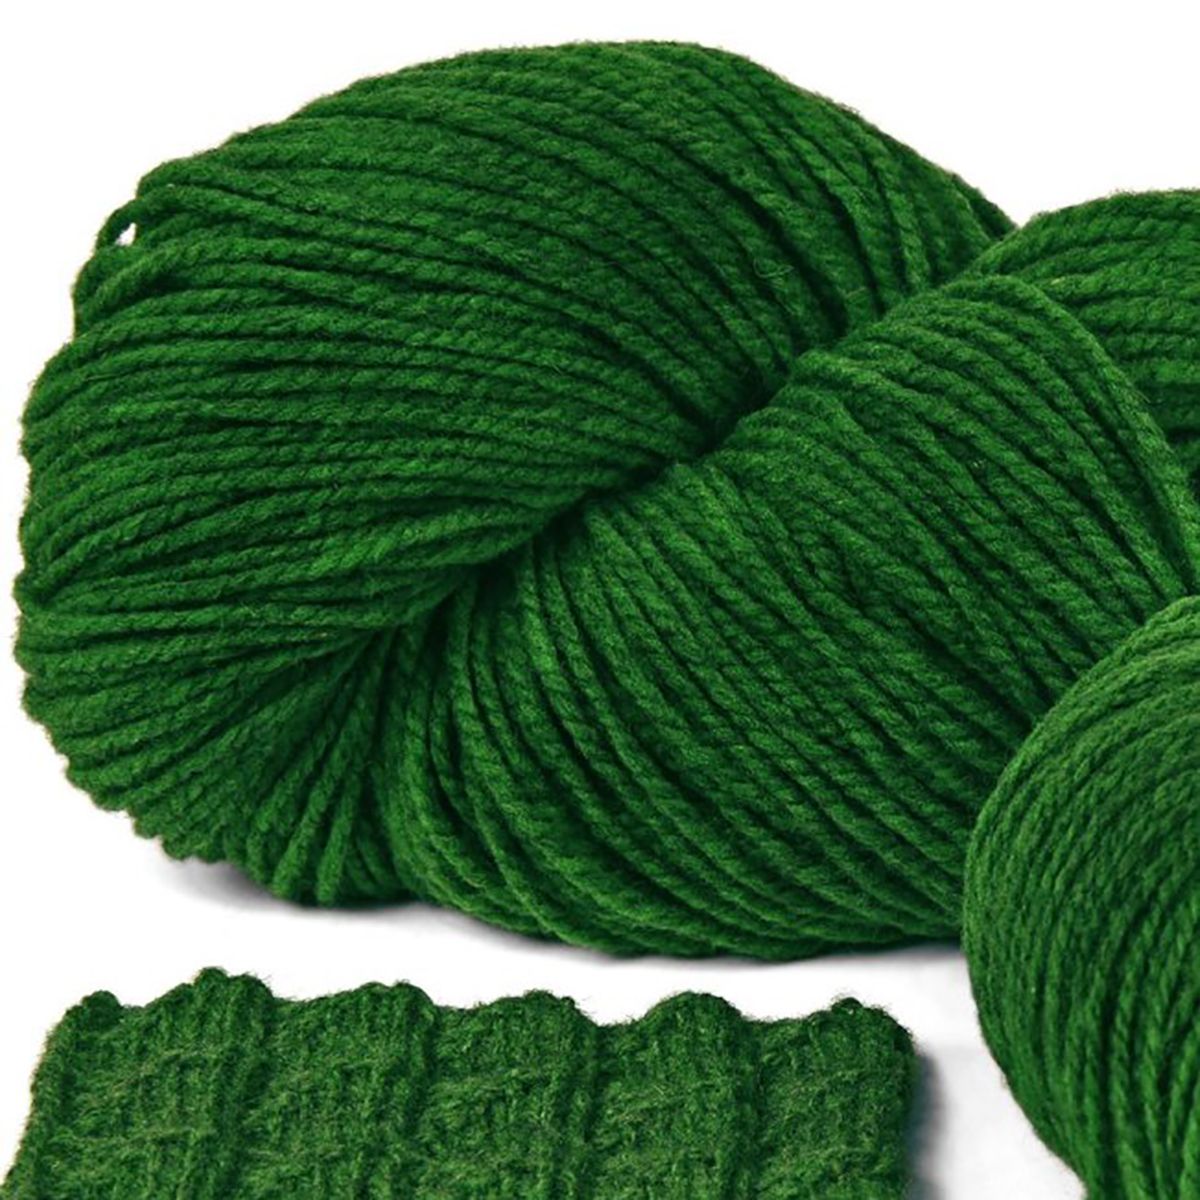  Len lông cừu hữu cơ 100g | Green Organic Wool | FINKHOF 